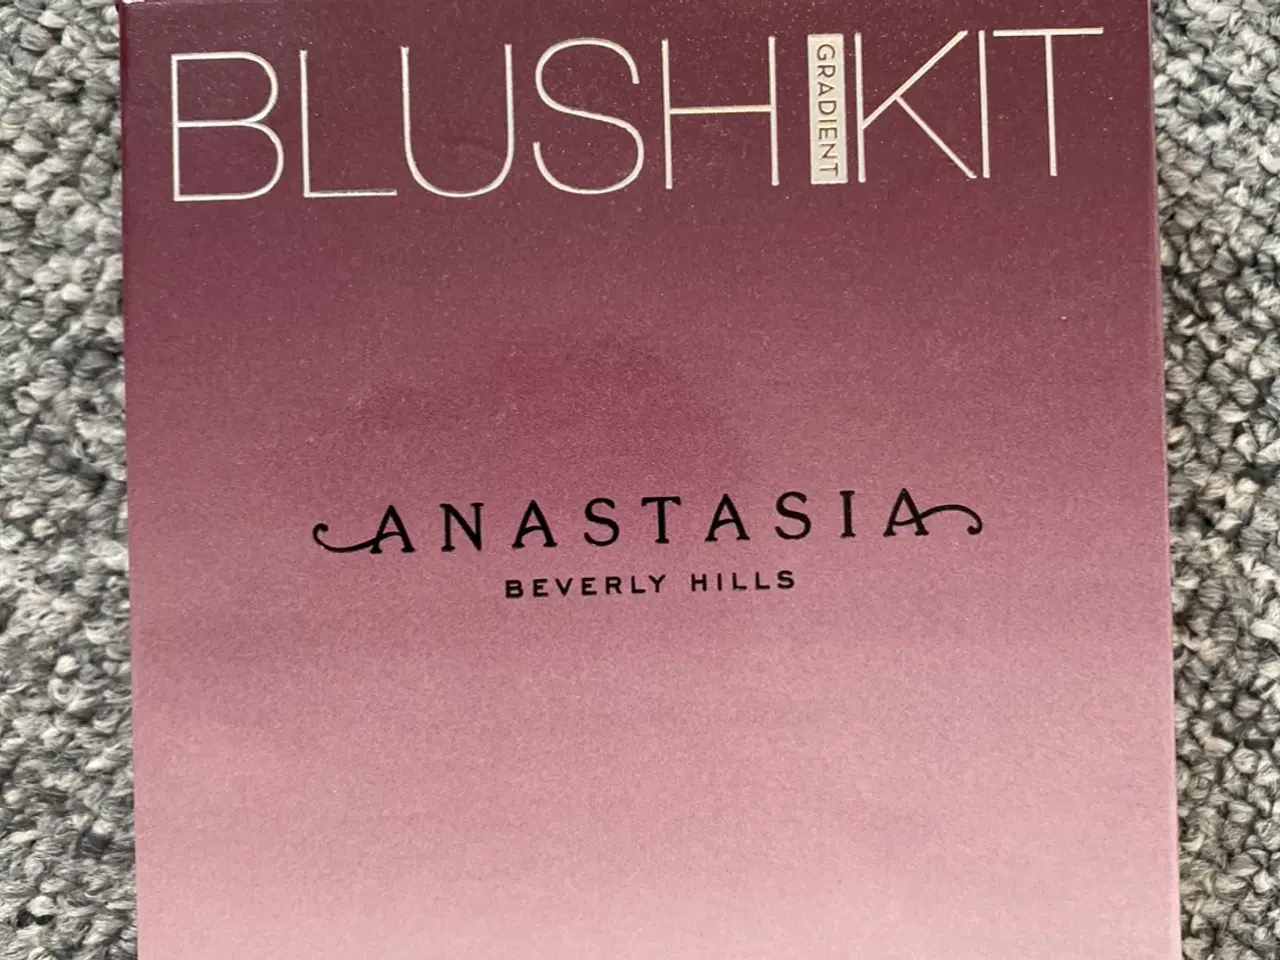 Billede 2 - Anastasia Beverly Hills; Blush Kit (gradient)